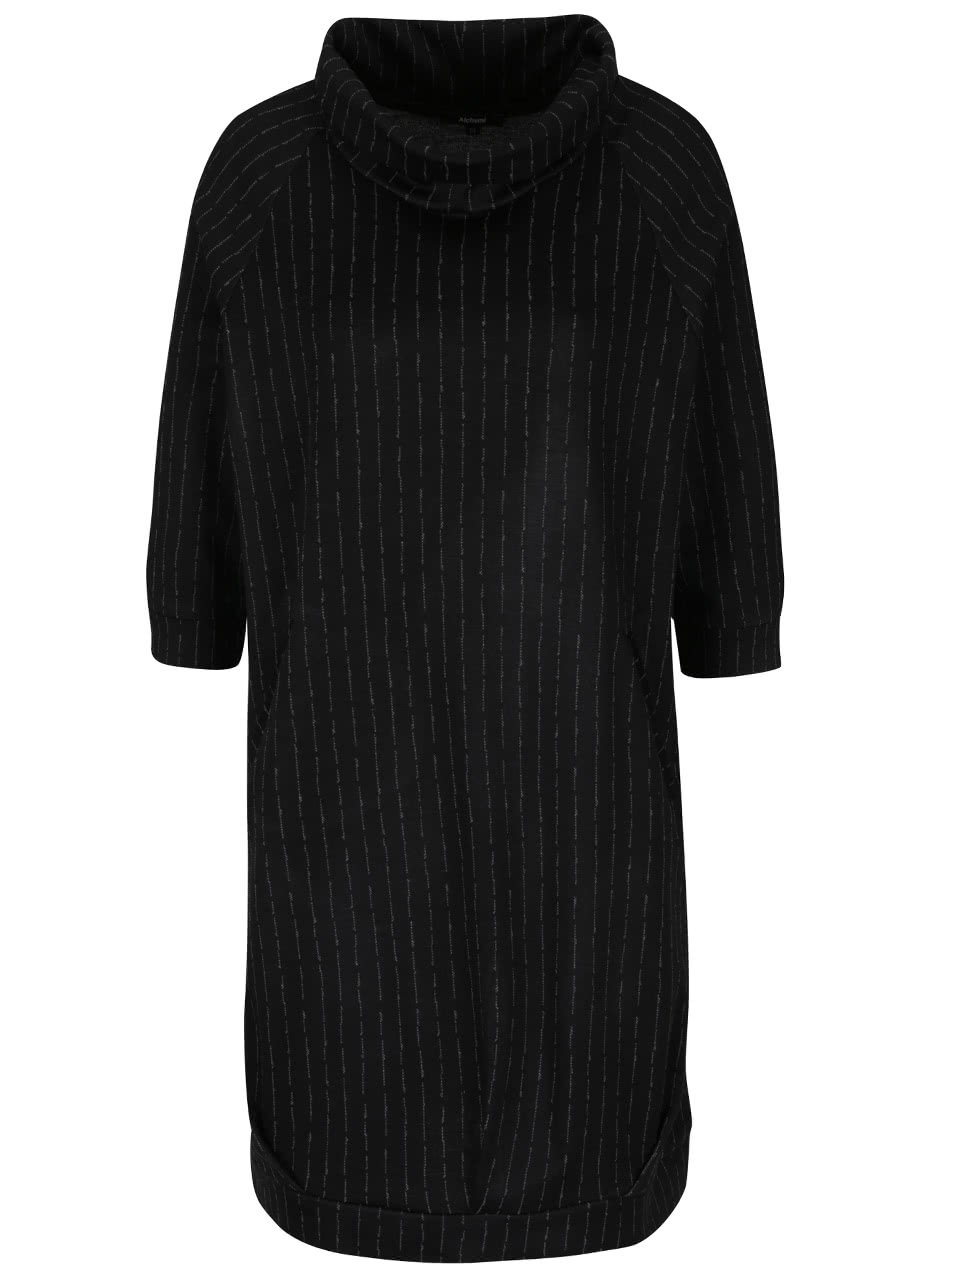 Černé volnější šaty s jemným vzorem Alchymi Freda